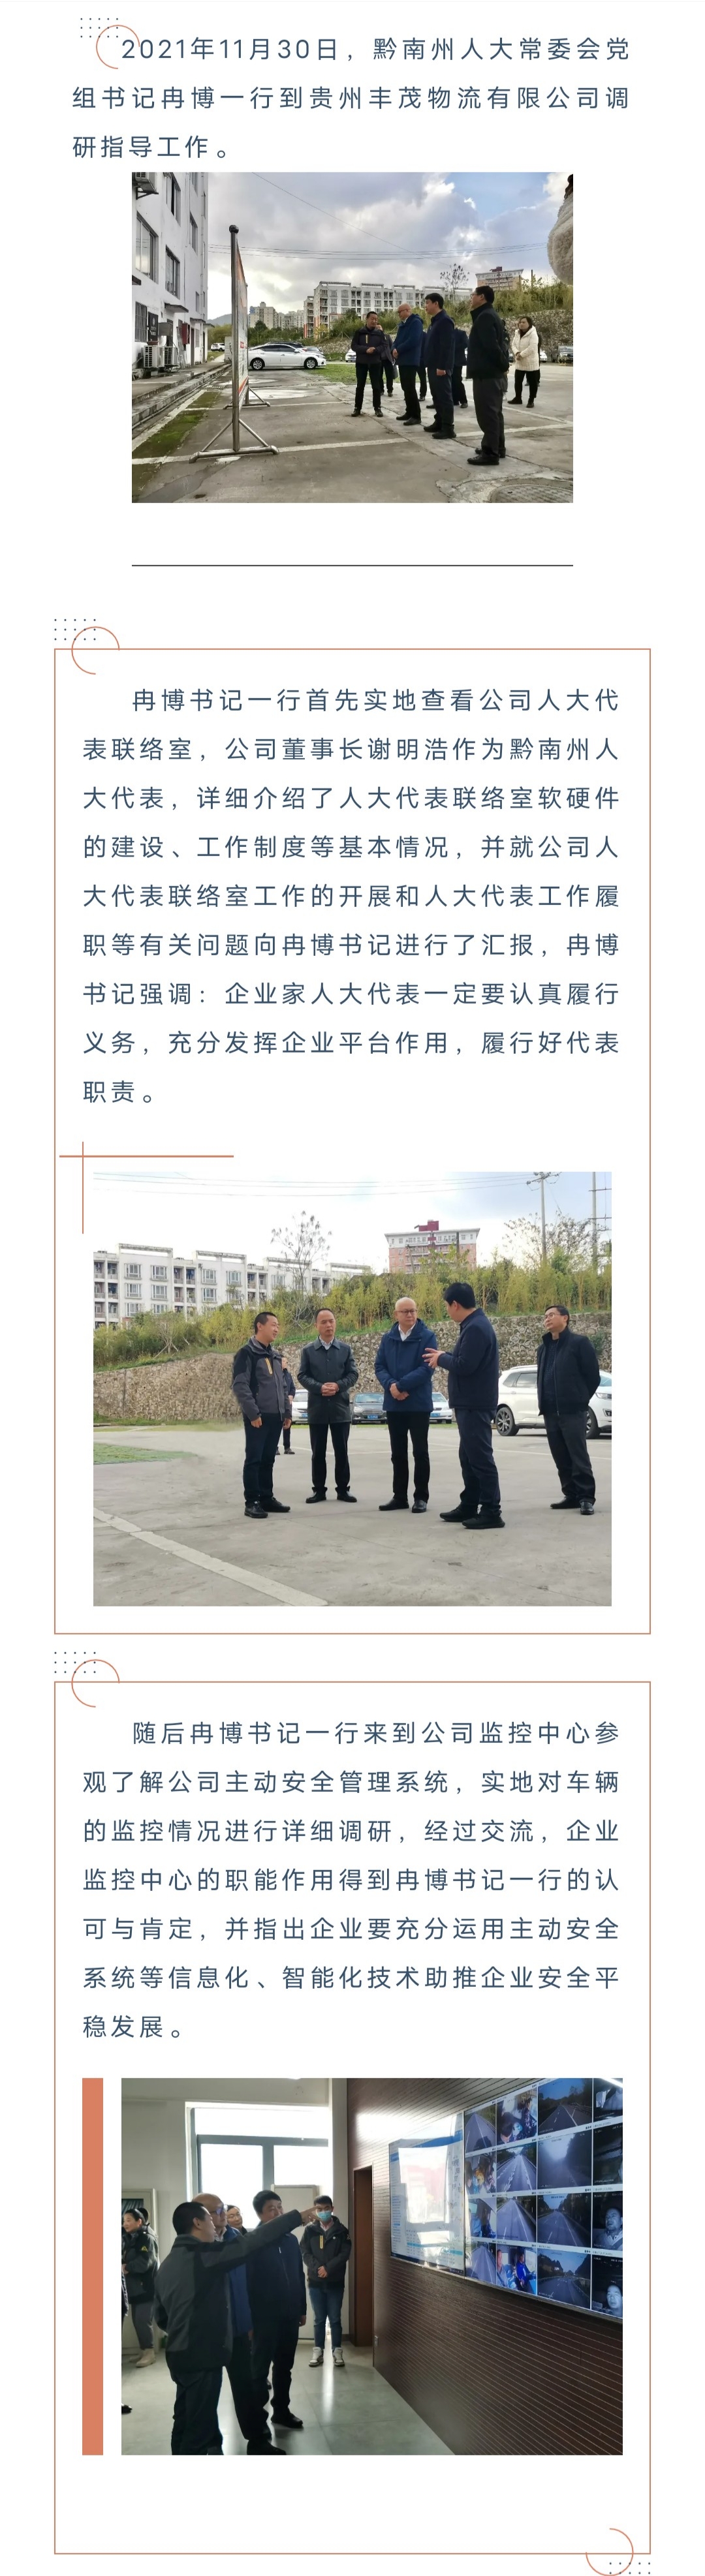 黔南州人大常委会党组书记冉博一行到贵州丰茂物流有限公司调研指导工作